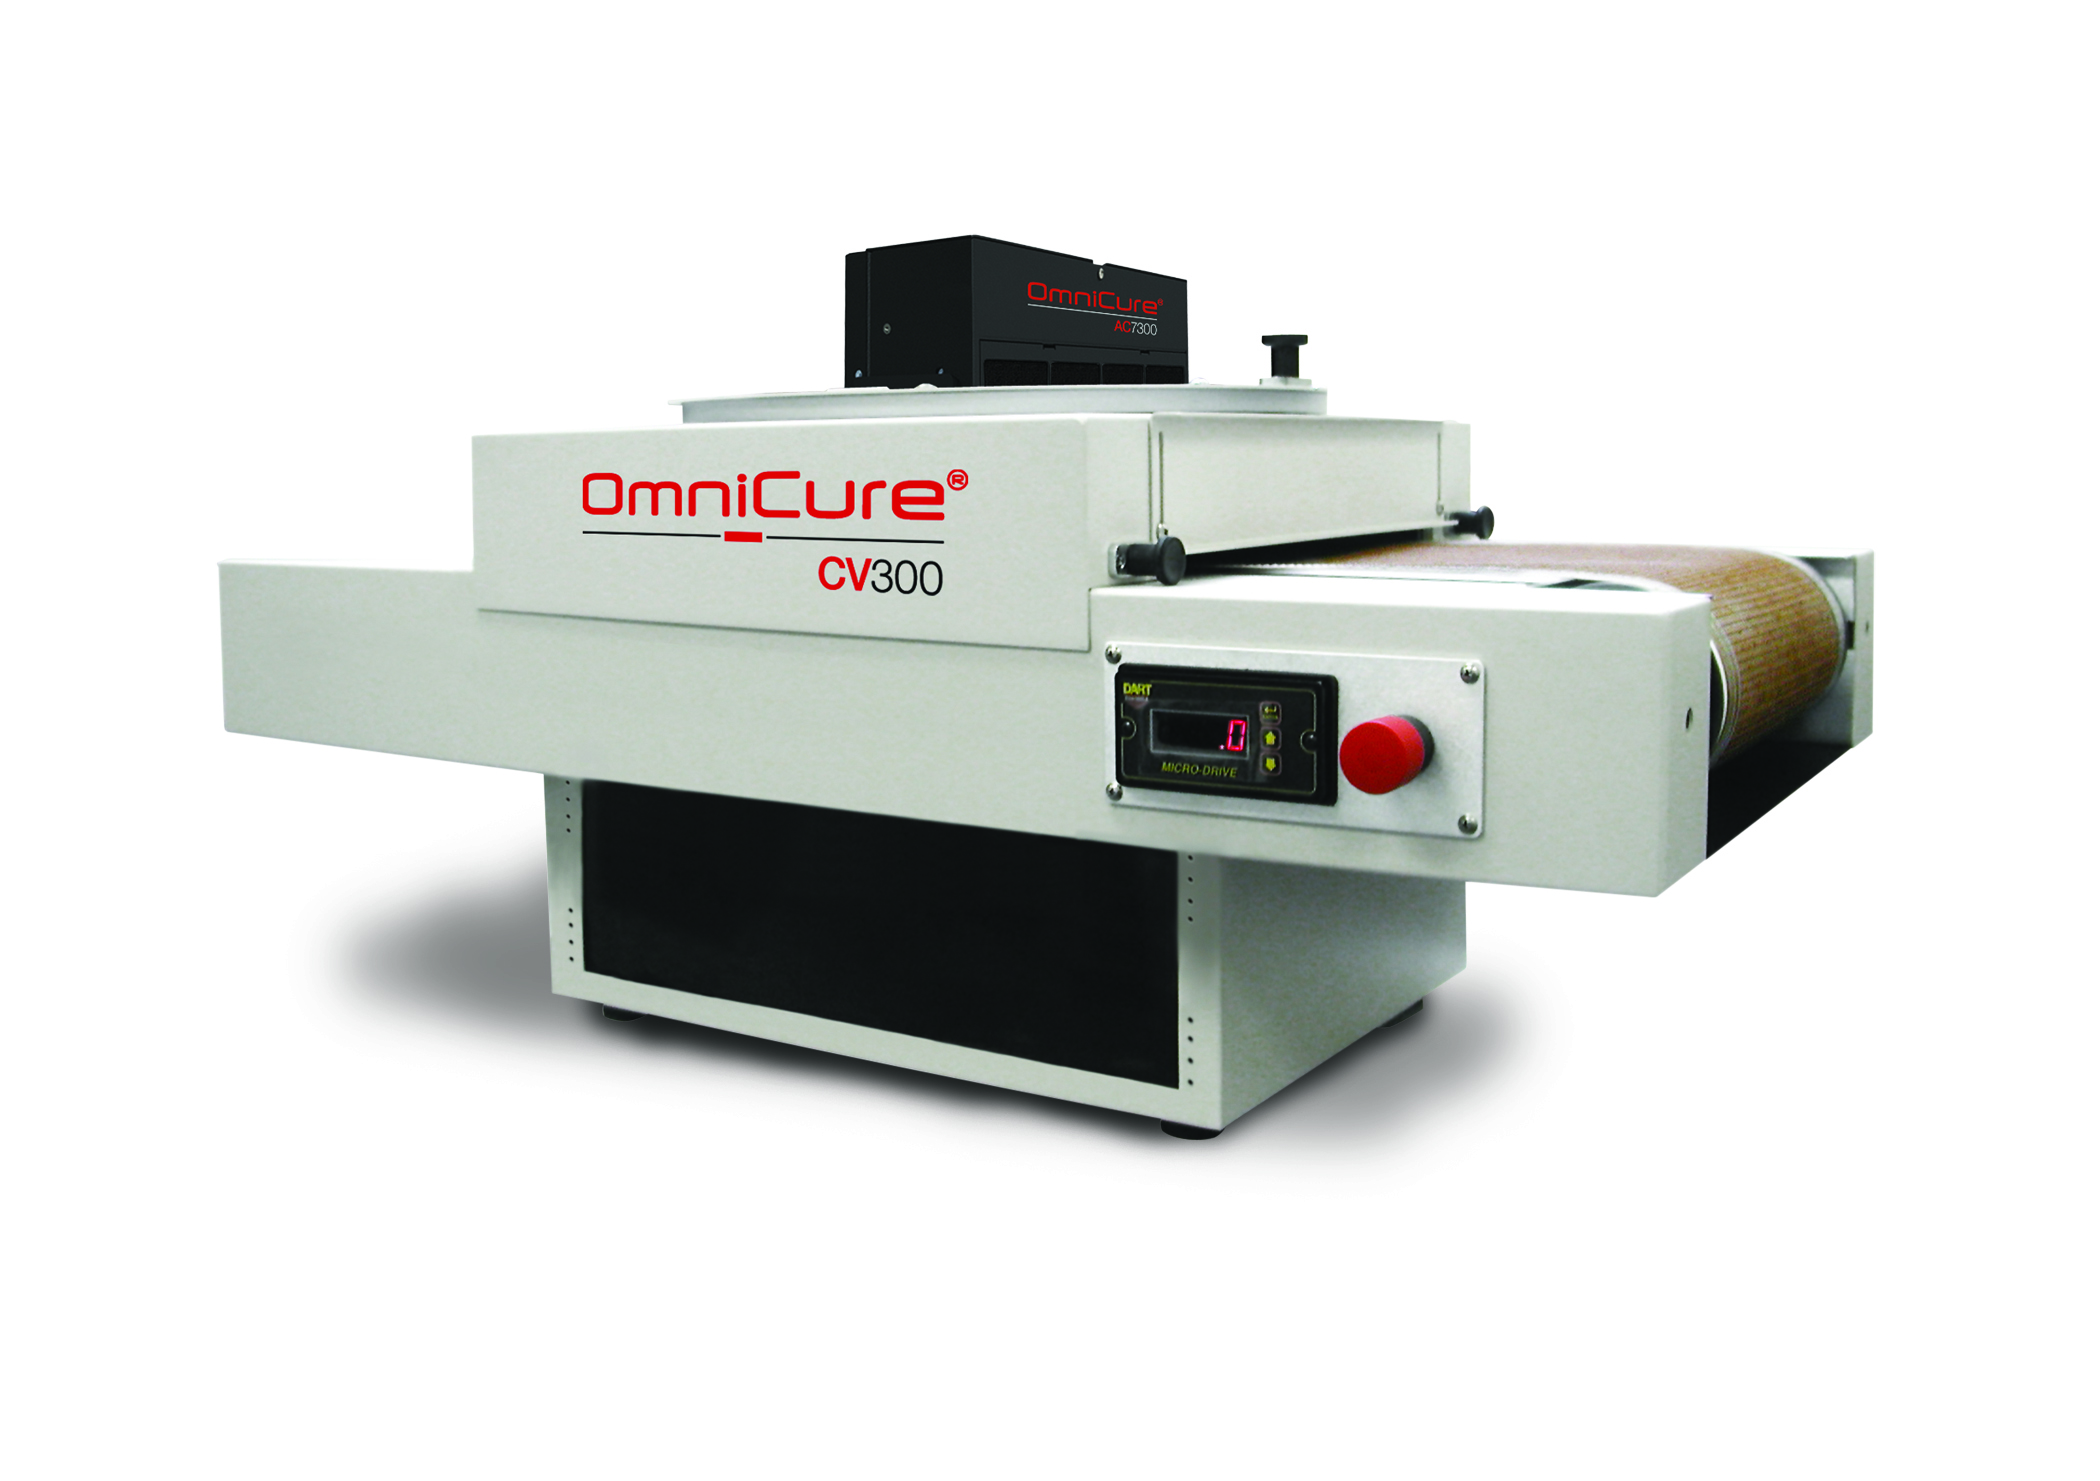 OmniCure CV300 Förderbandsystem für Kleinserienproduktion